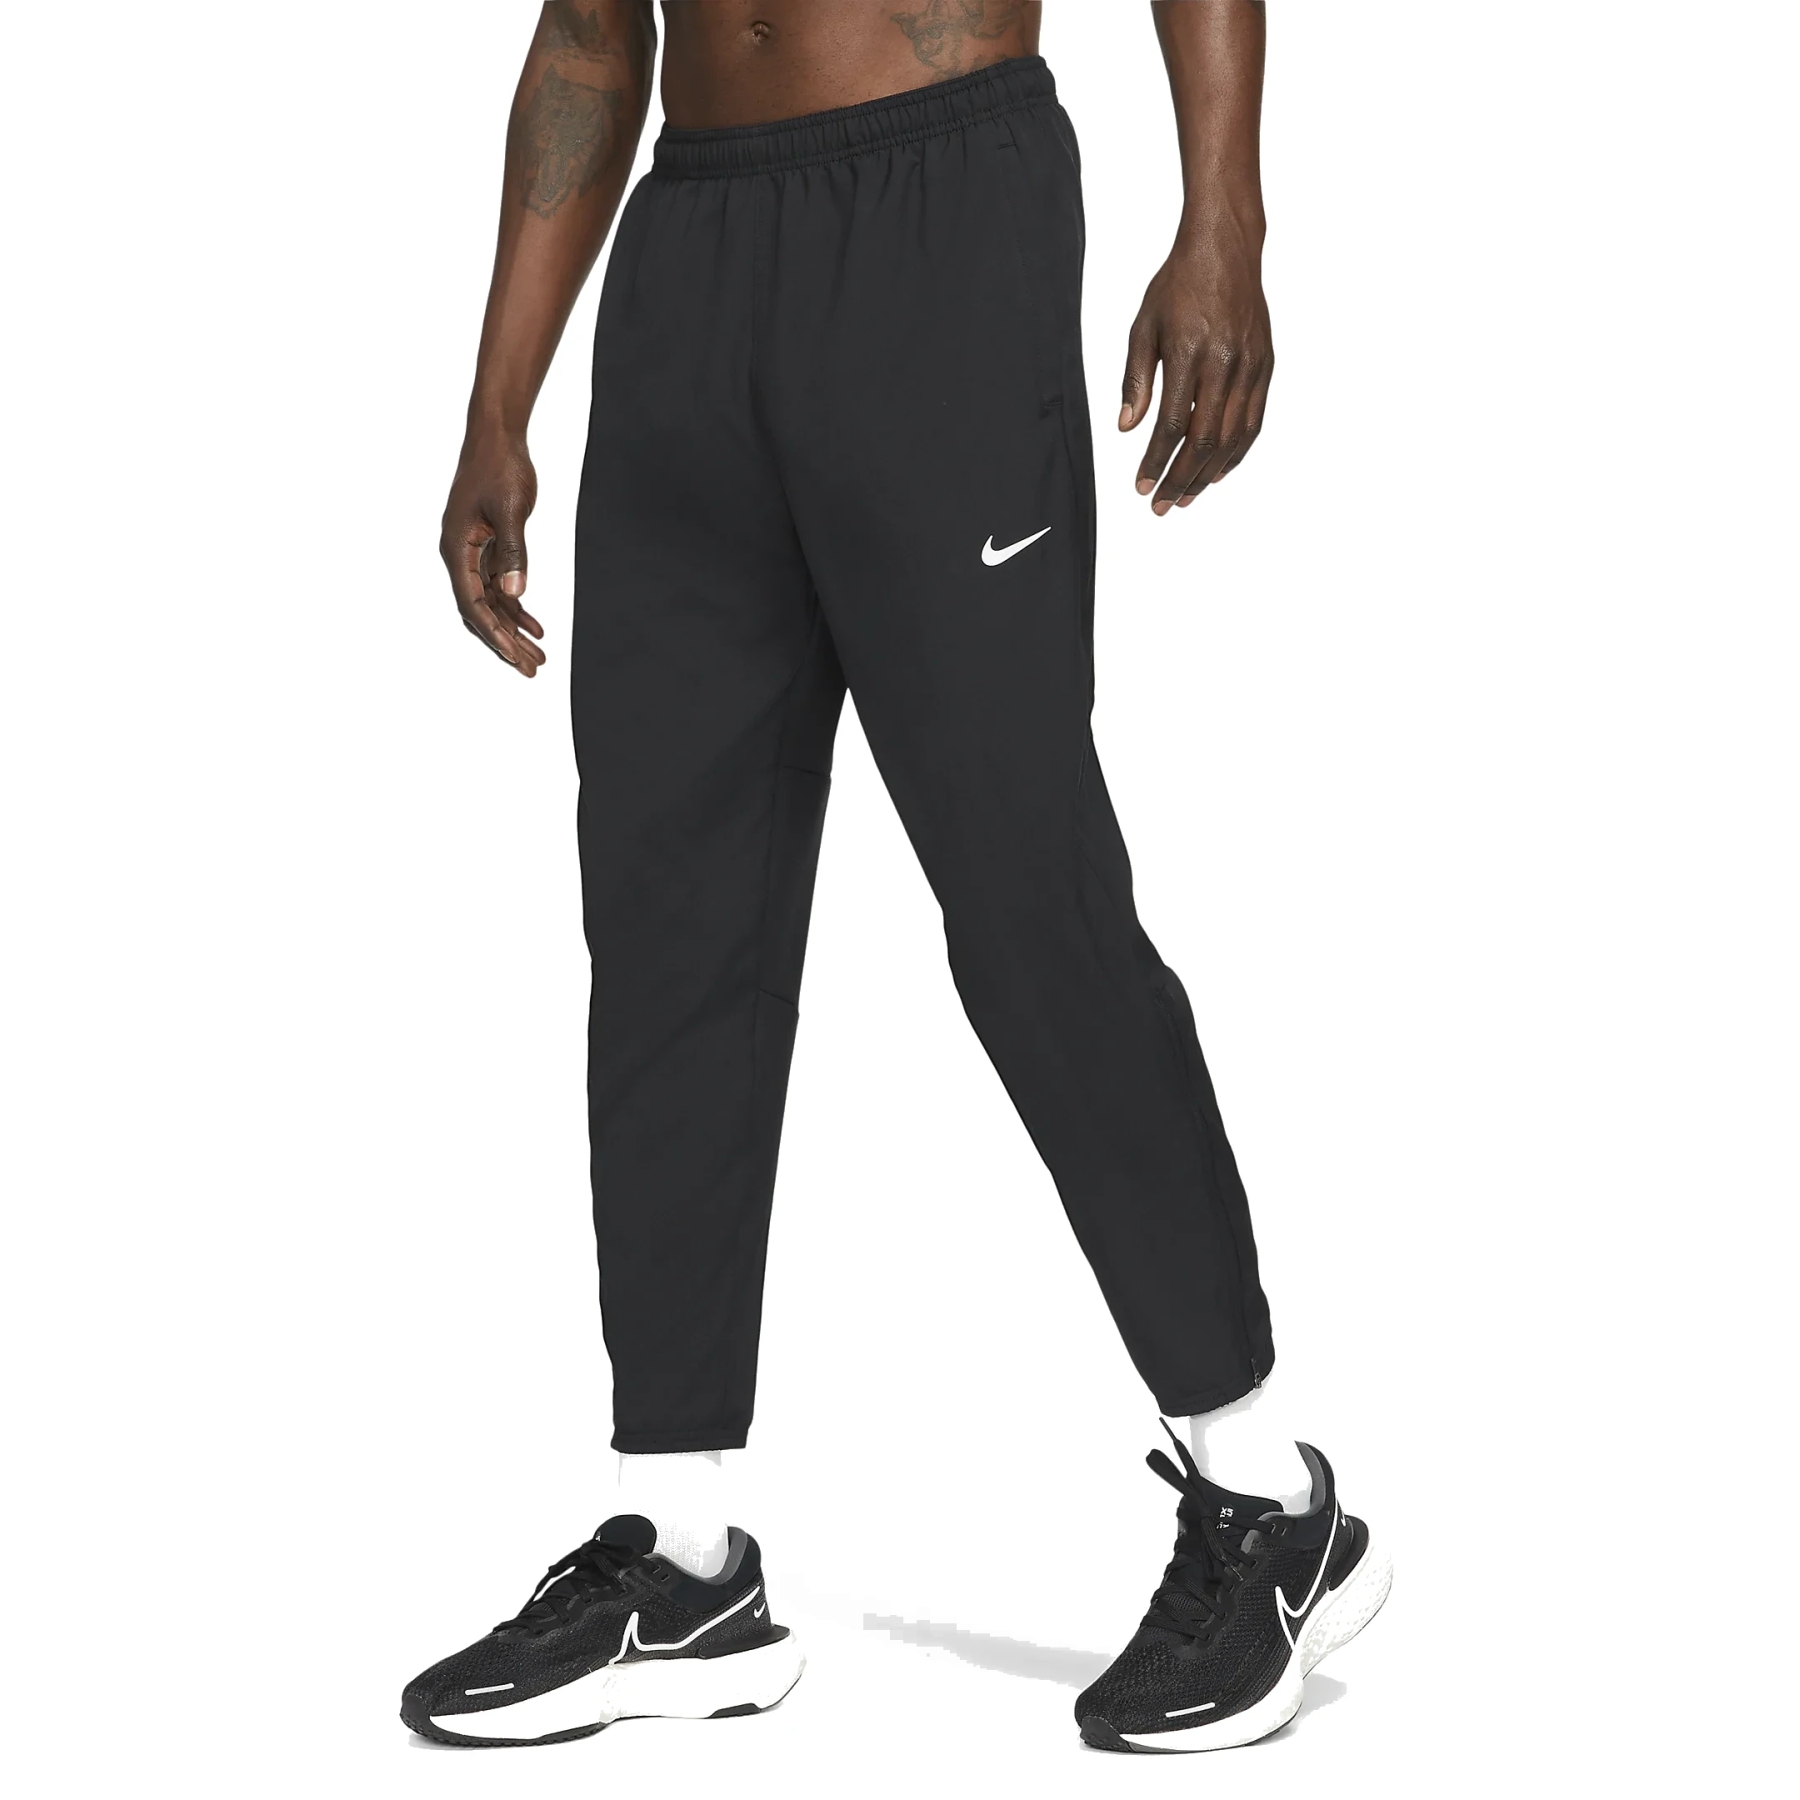 Immagine di Nike Pantaloni da Corsa Uomo - Dri-FIT Challenger - black/reflective silver DD4894-010